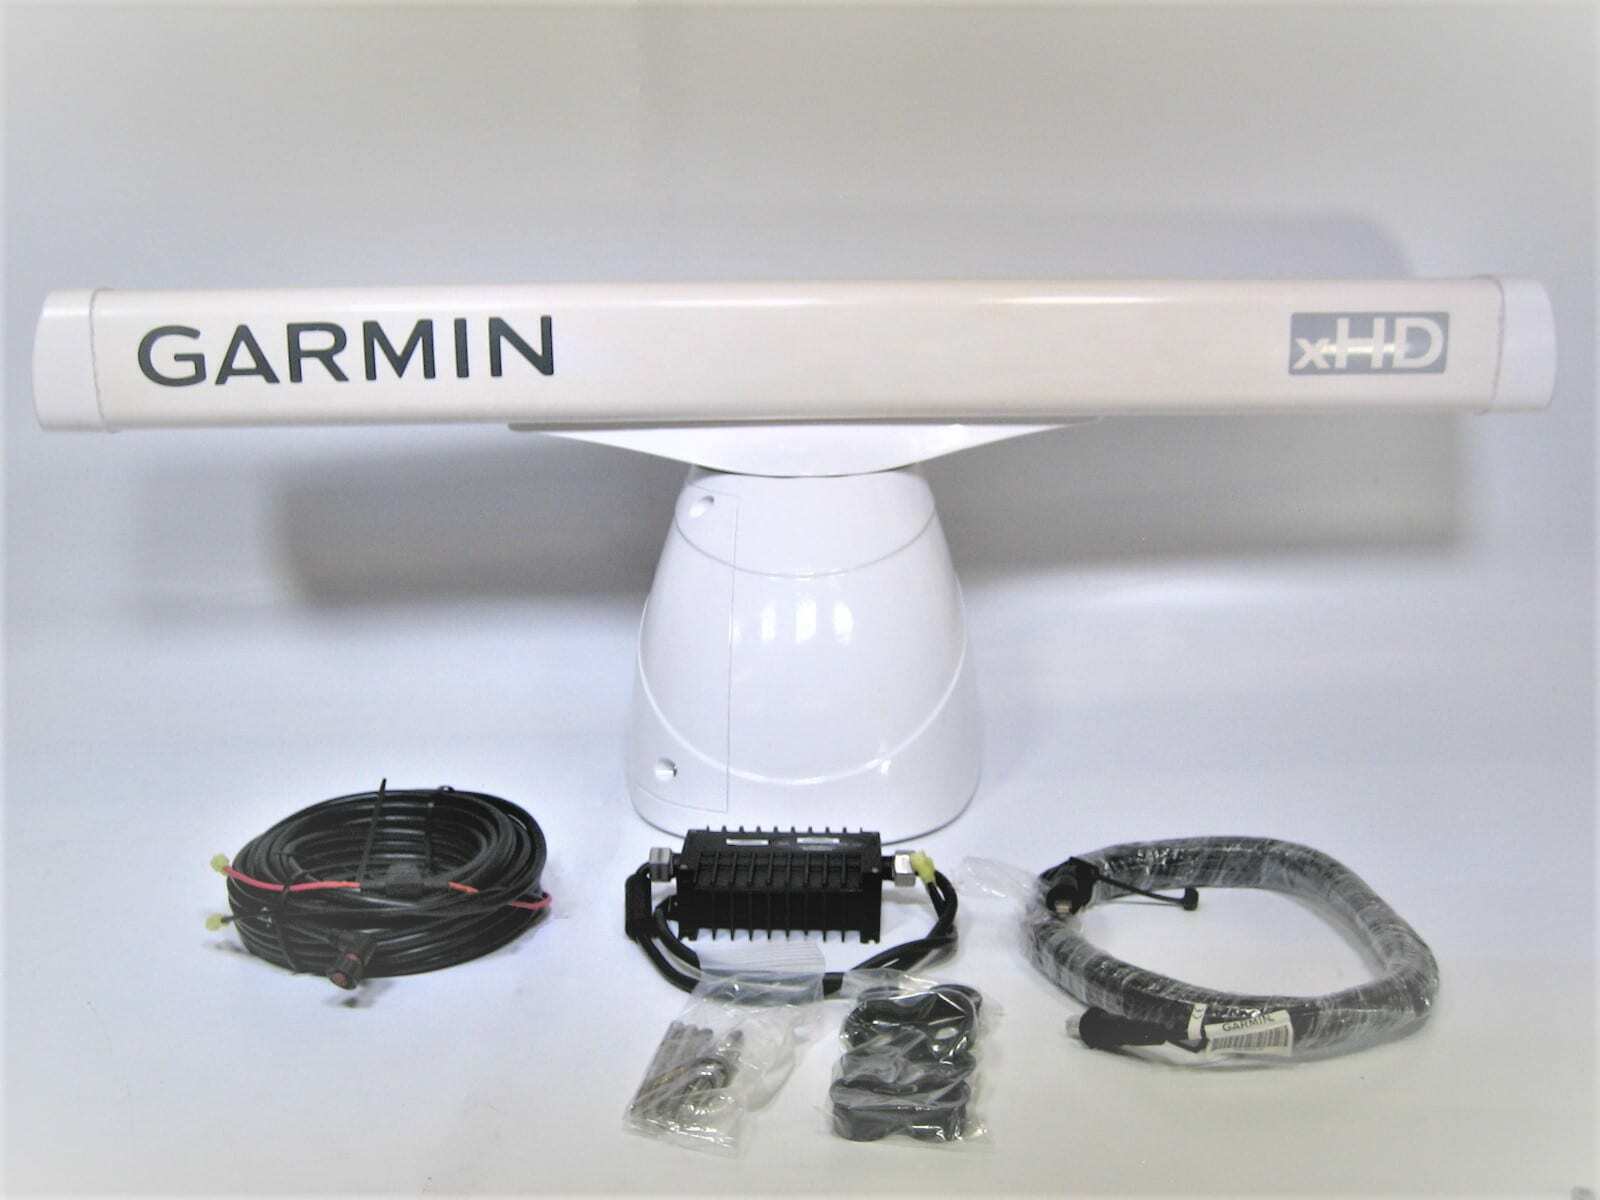 Garmin-12kw Radar Add-on / Gmr1204 Xhd Pedestal W/4' Antenna-tested